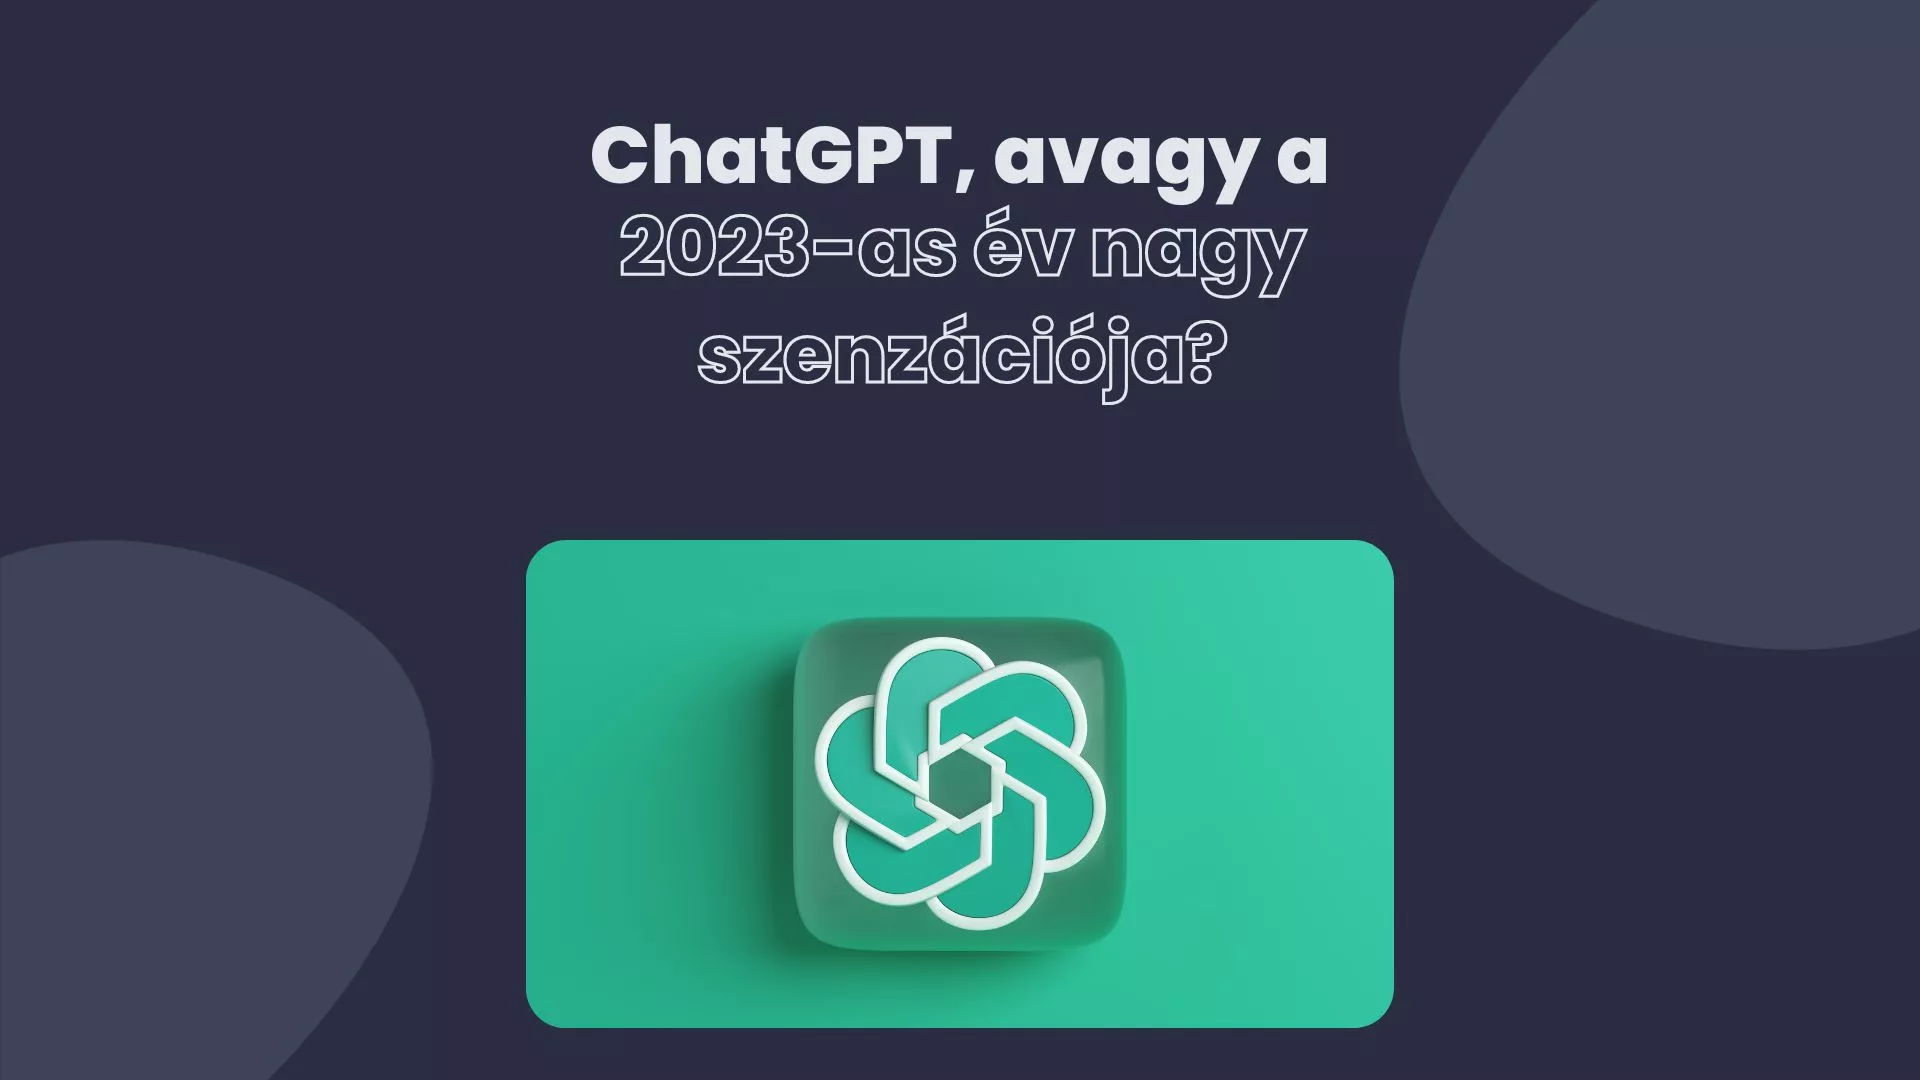 ChatGPT, avagy 2023 továbbfejlesztett chatbotja - PixelSite